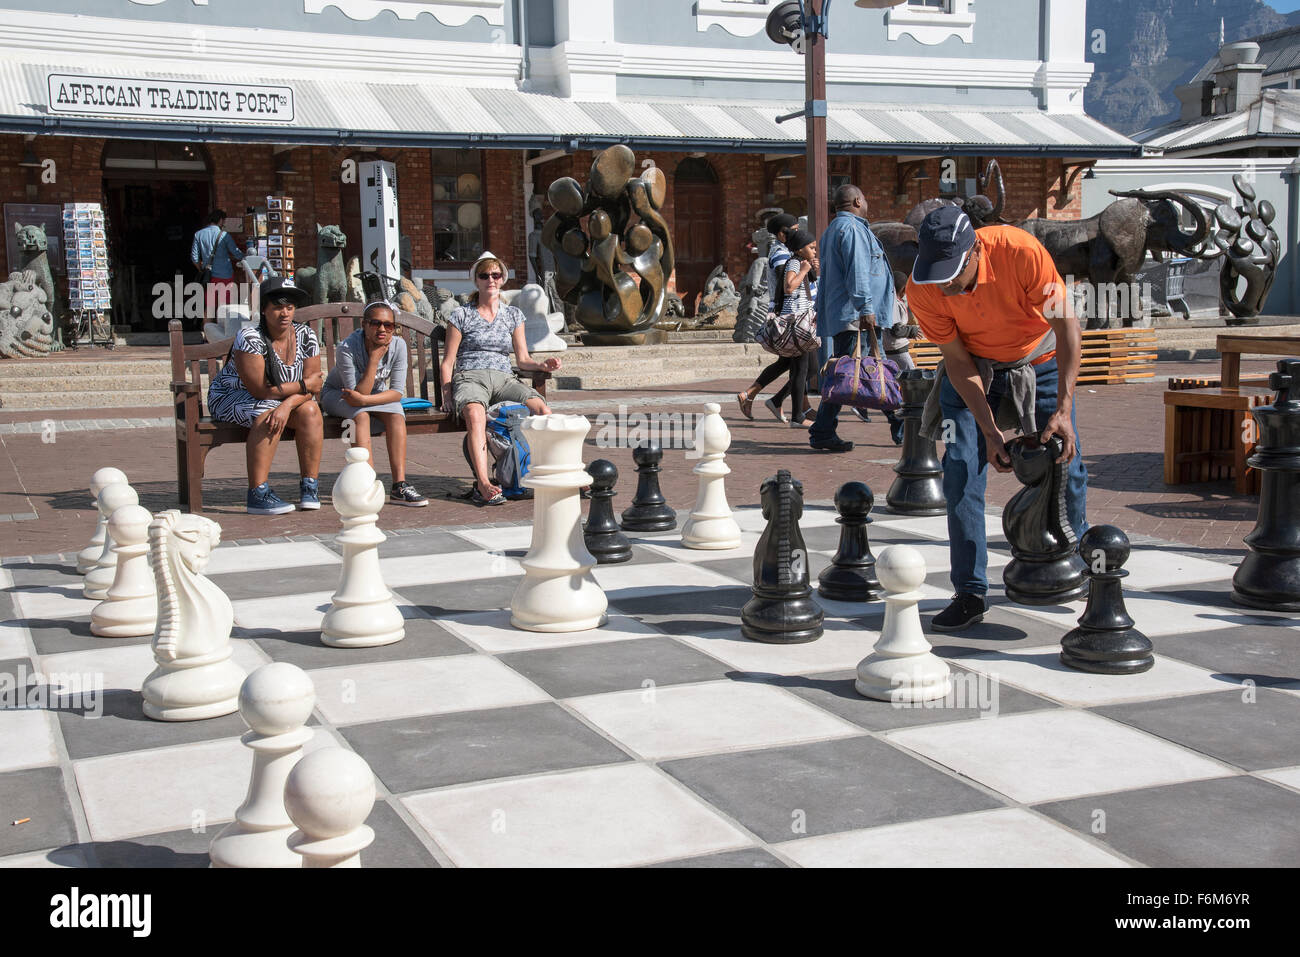 Les joueurs bénéficient d'un jeu d'échecs de la rue sur le bord de l'eau à Cape Town Afrique du Sud Banque D'Images